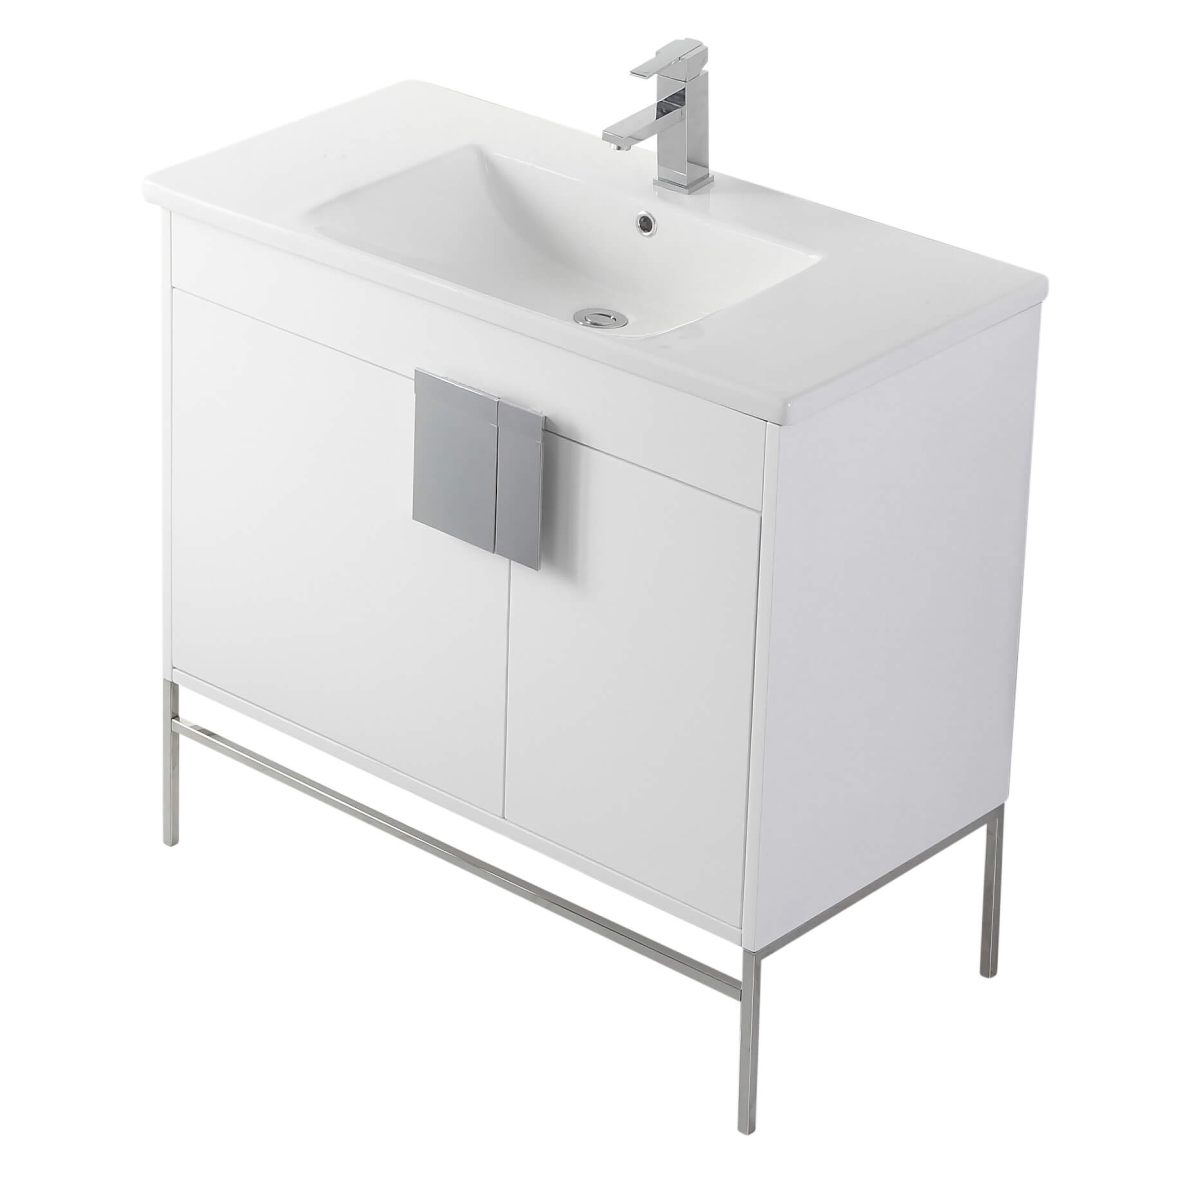 Shawbridge 36" Modern Bathroom Vanity  White with Polished Chrome Hardware